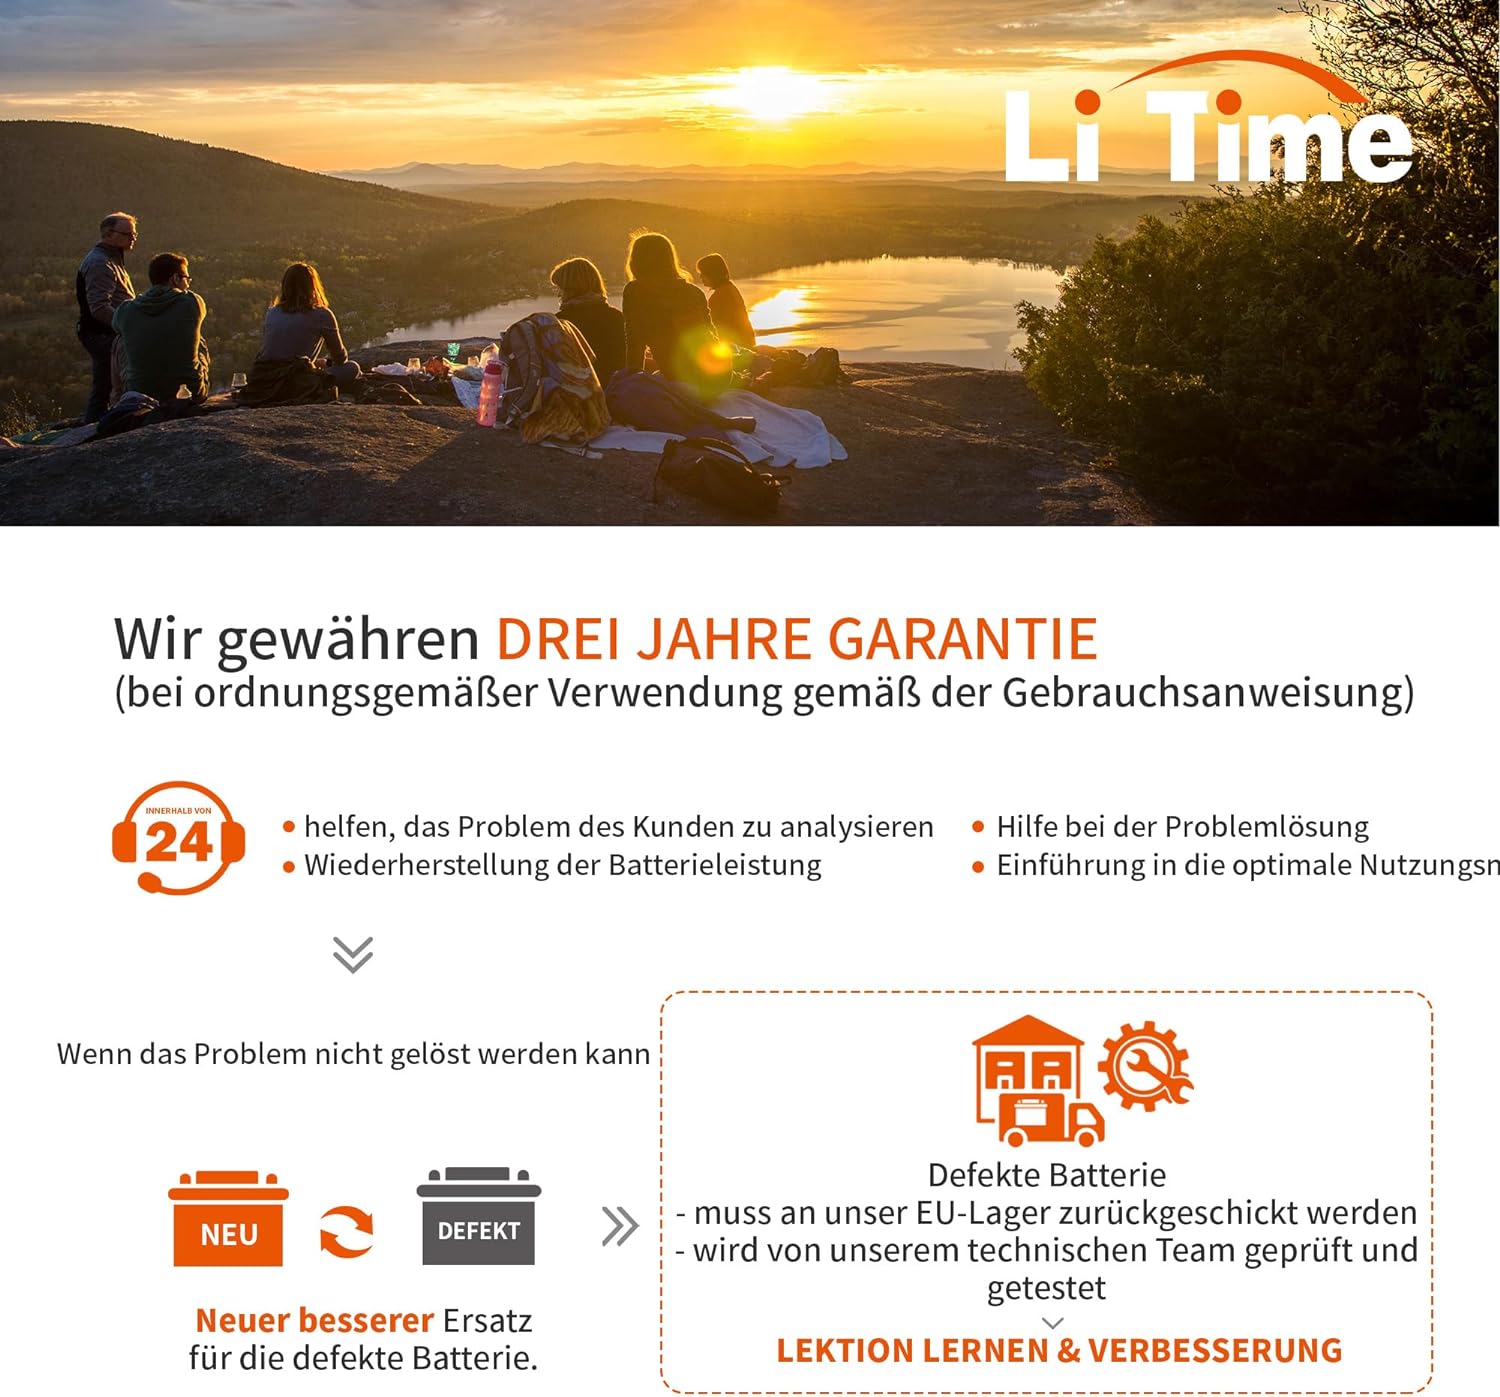 LiTime bietet eine 3-jährige Garantie für die LiTime 12V 6Ah Batterien.